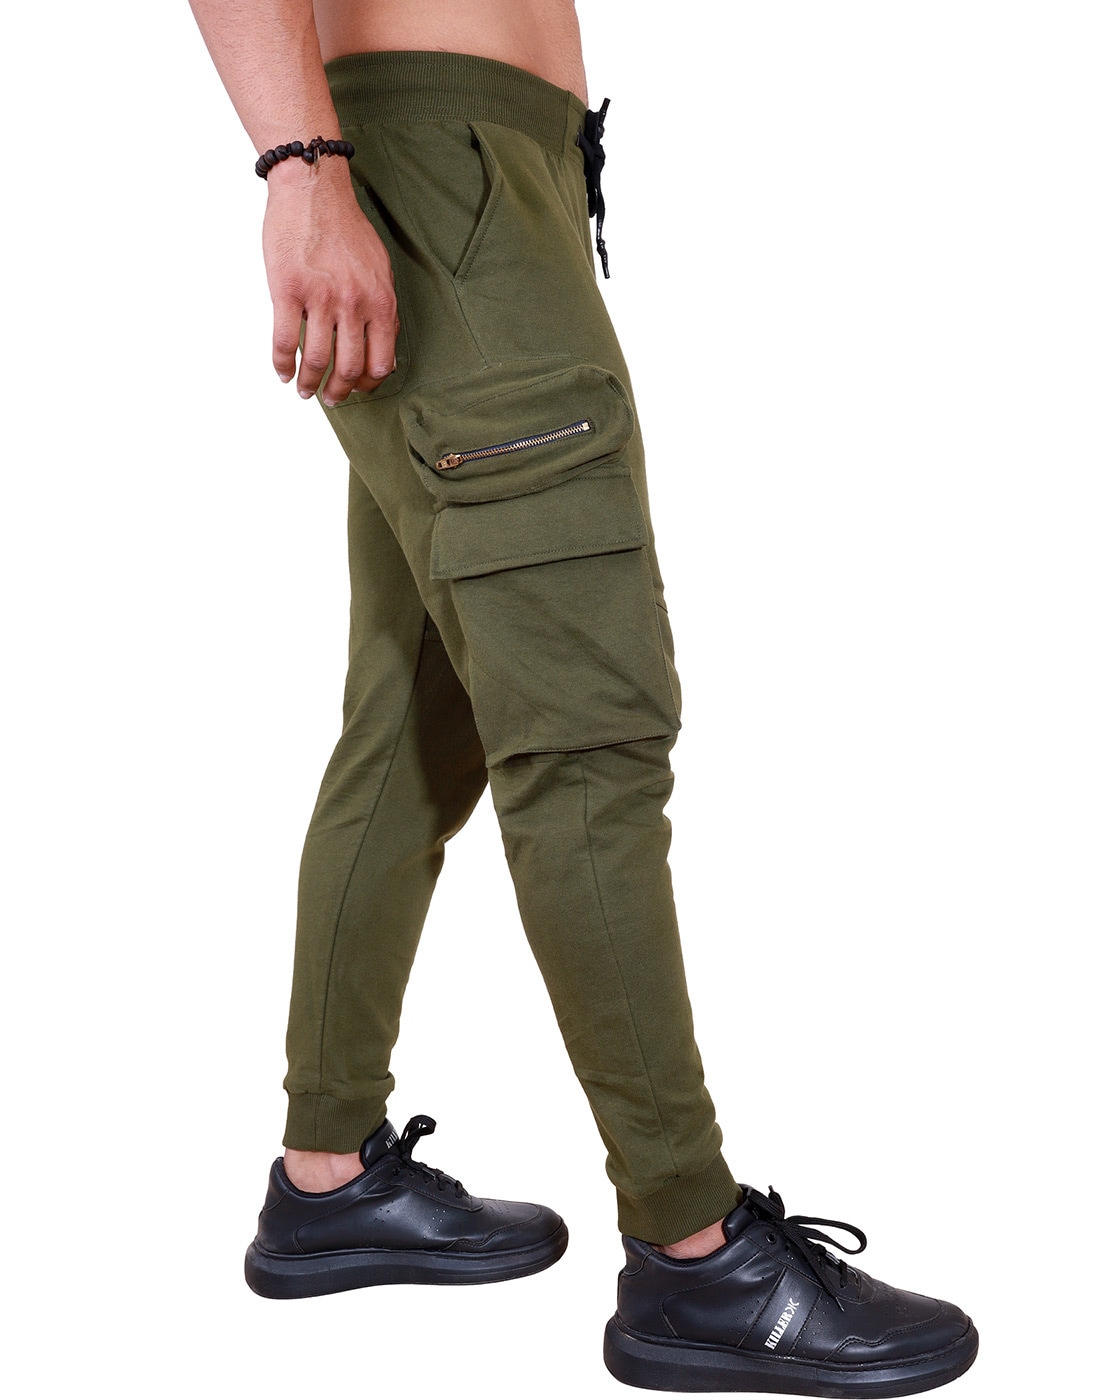 VRST Commuter Jogger Pants Men XL Olive Green Cargo Pockets